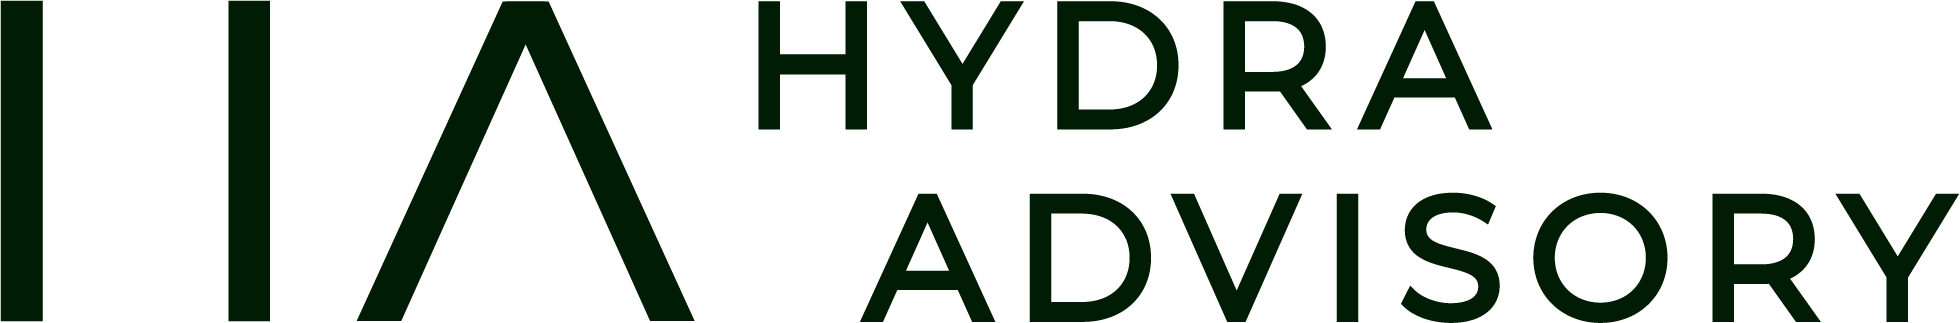 Hydra Advisory